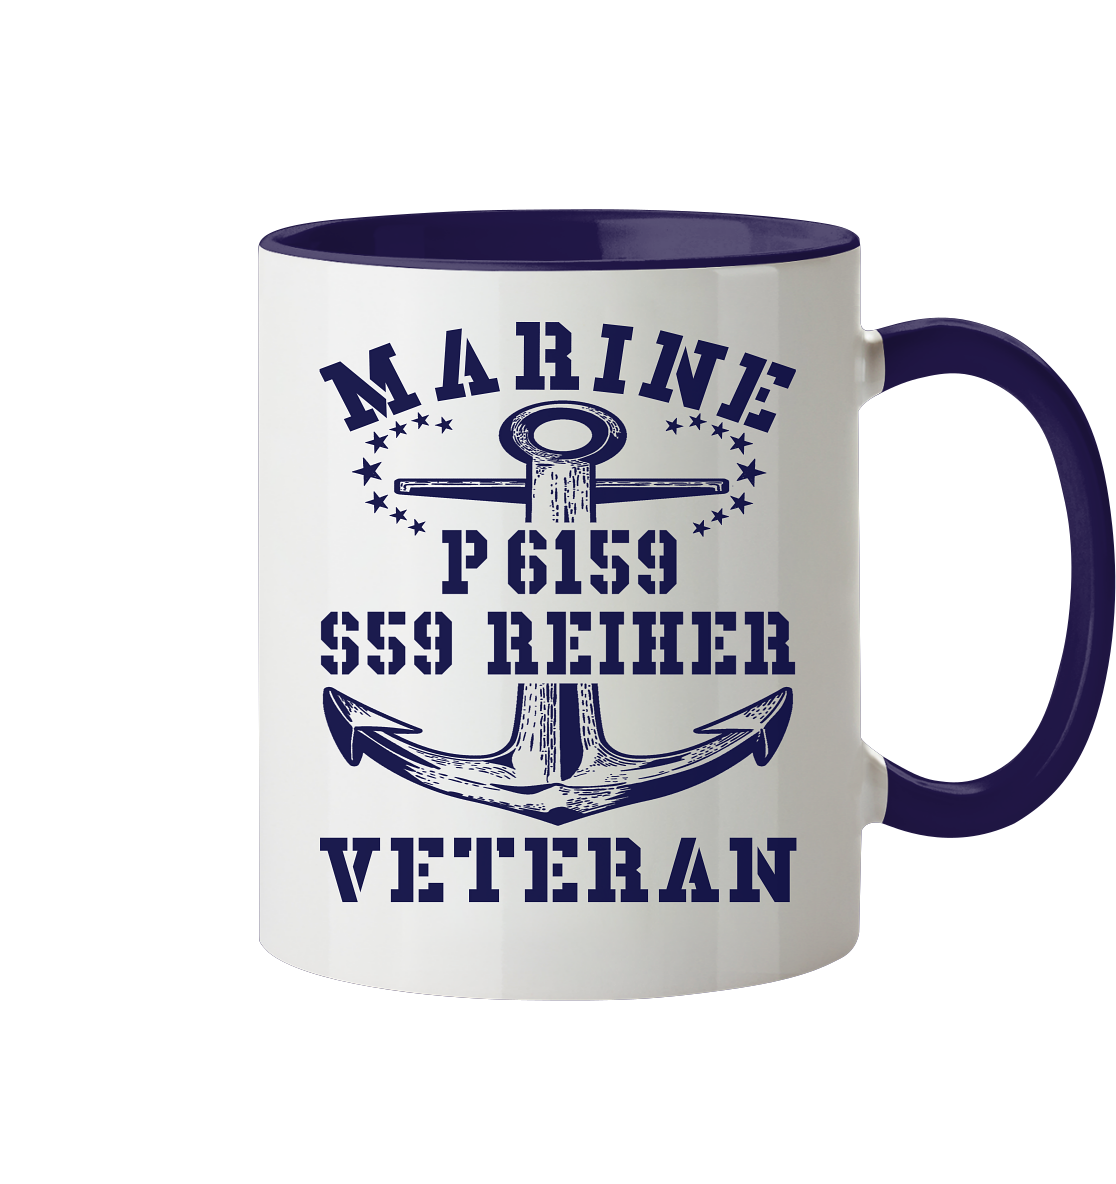 P6159 S59 REIHER Marine Veteran - Tasse zweifarbig